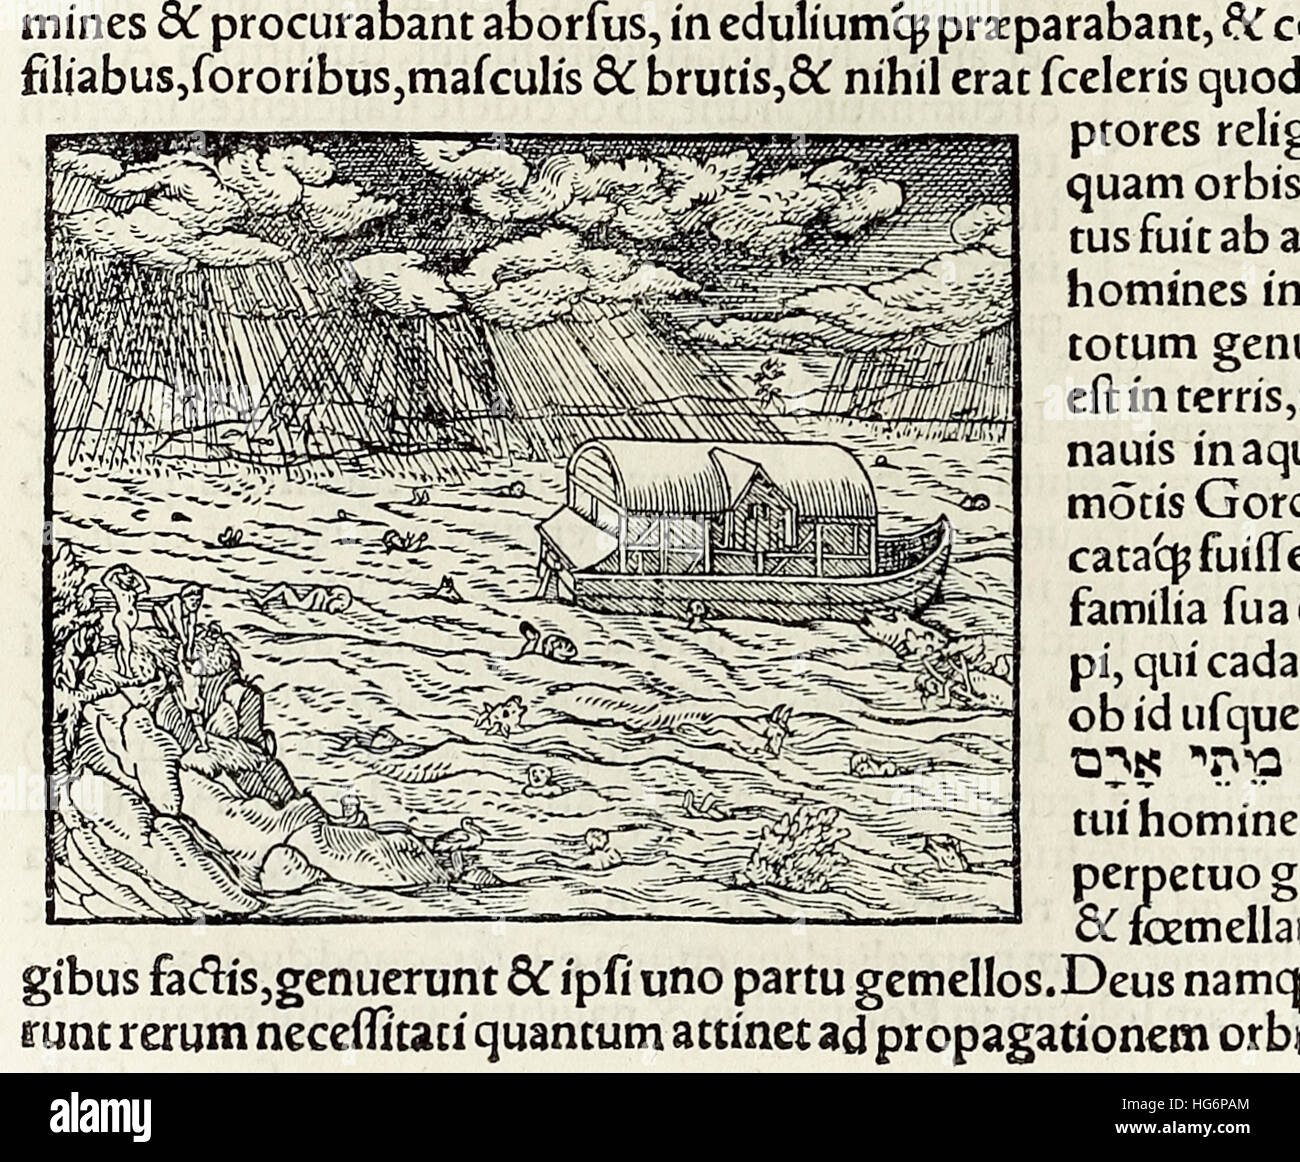 Arche Noah und der Sintflut, Holzschnitt von 1550-Ausgabe der "Cosmographia" von Sebastian Münster (1488-1552). Siehe Beschreibung für mehr Informationen. Stockfoto